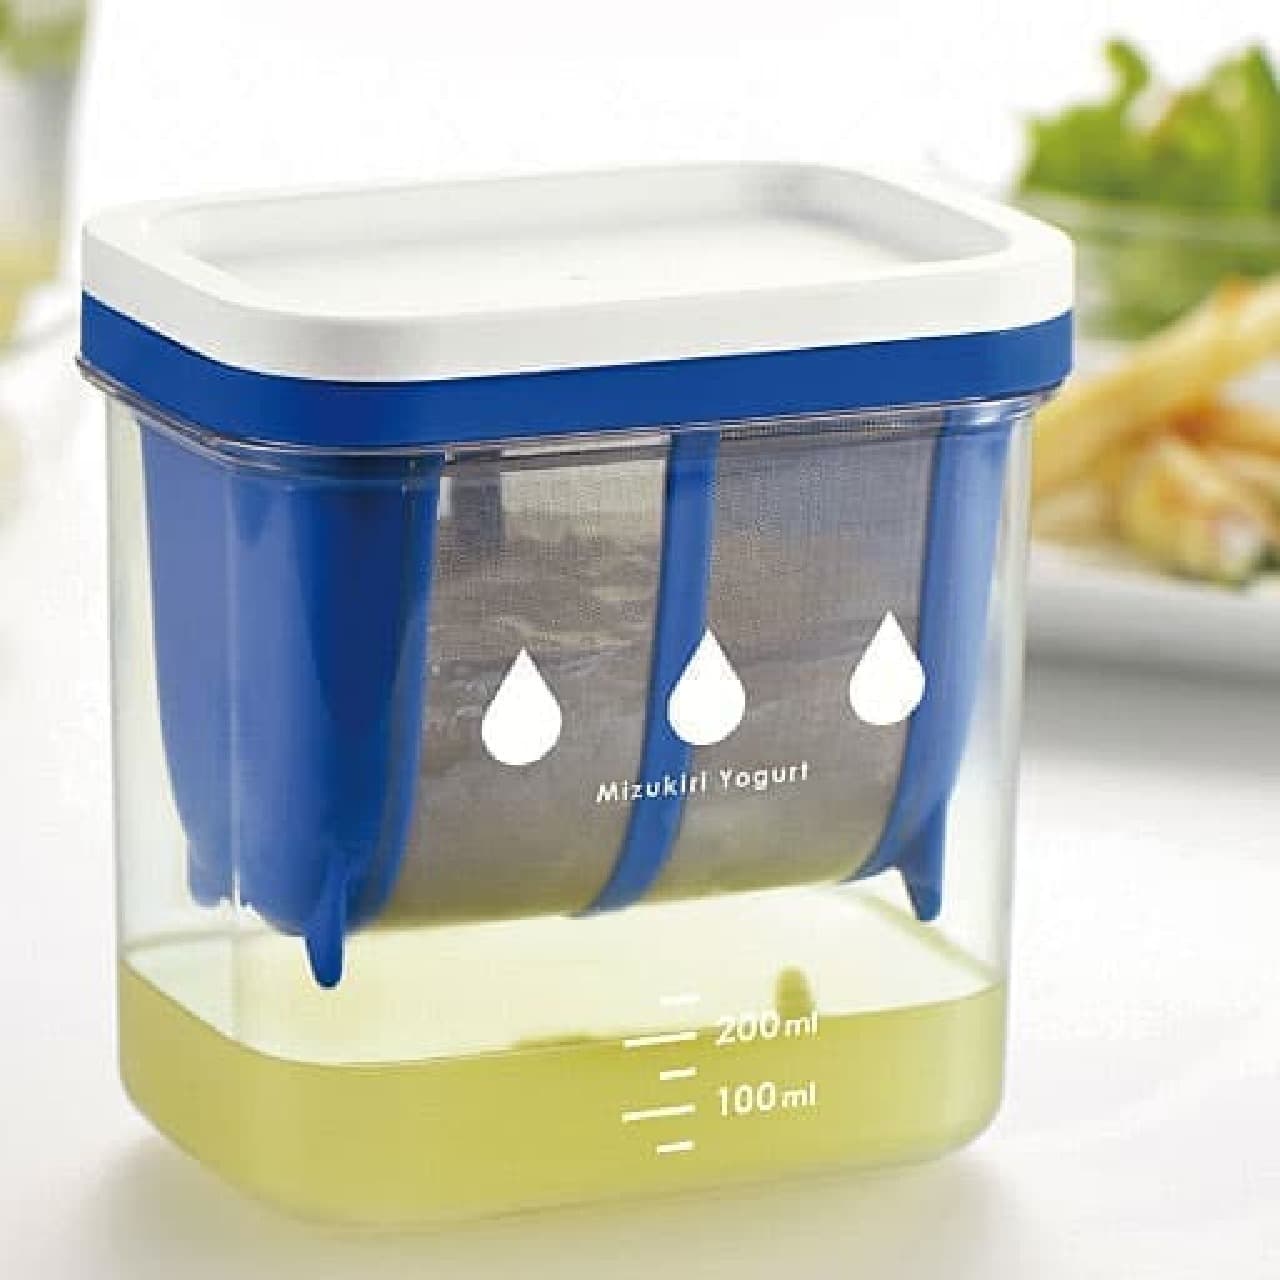 水切りヨーグルトを作るための専用容器  「水切りヨーグルトができる容器」